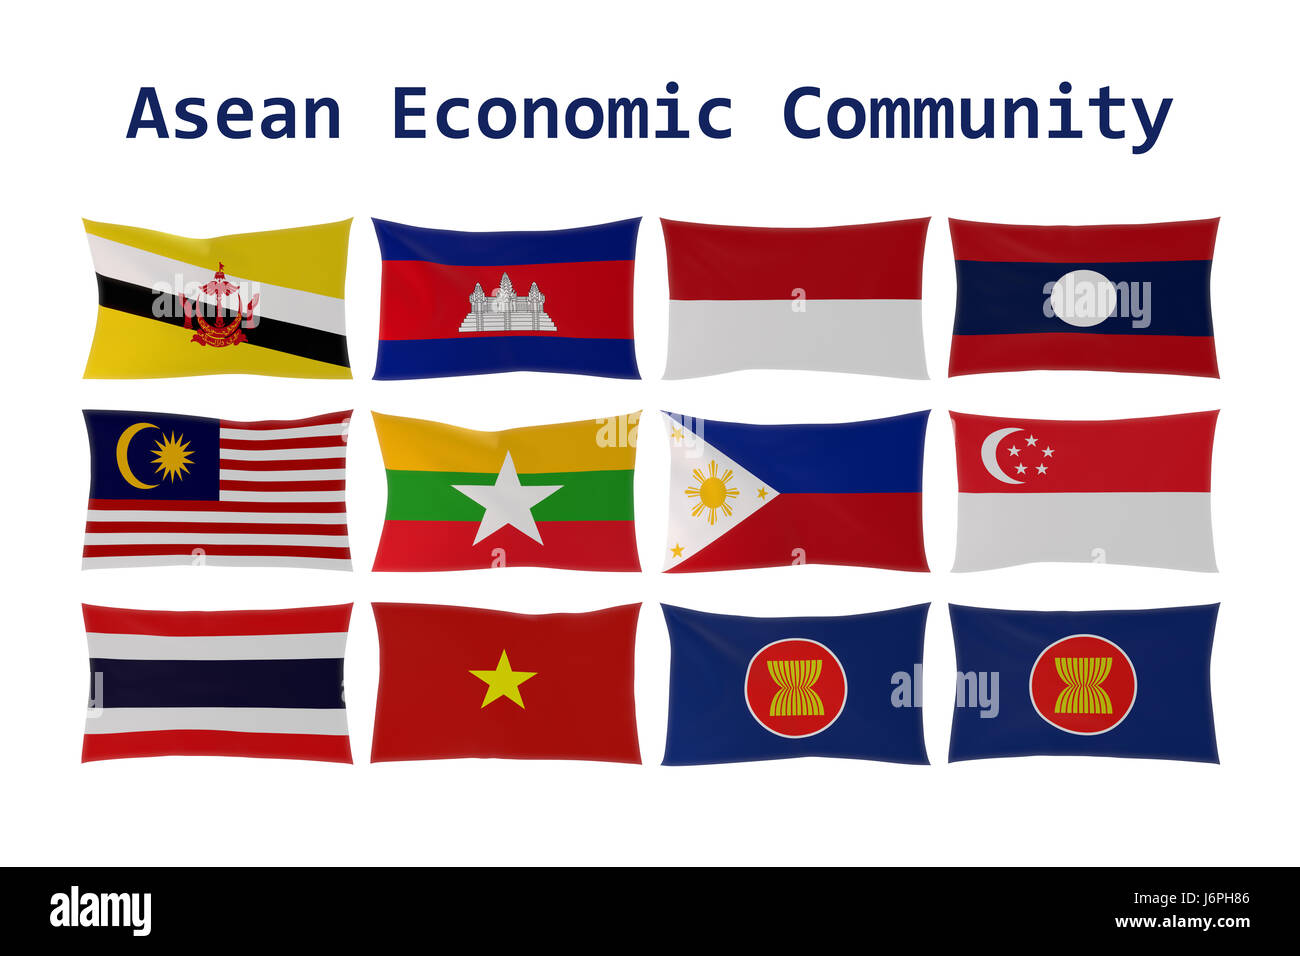 Le rendu 3D des drapeaux des pays de l'ANASE (Association des nations du Sud-Est asiatique) et Communauté économique de l'Asean (AEC) Banque D'Images